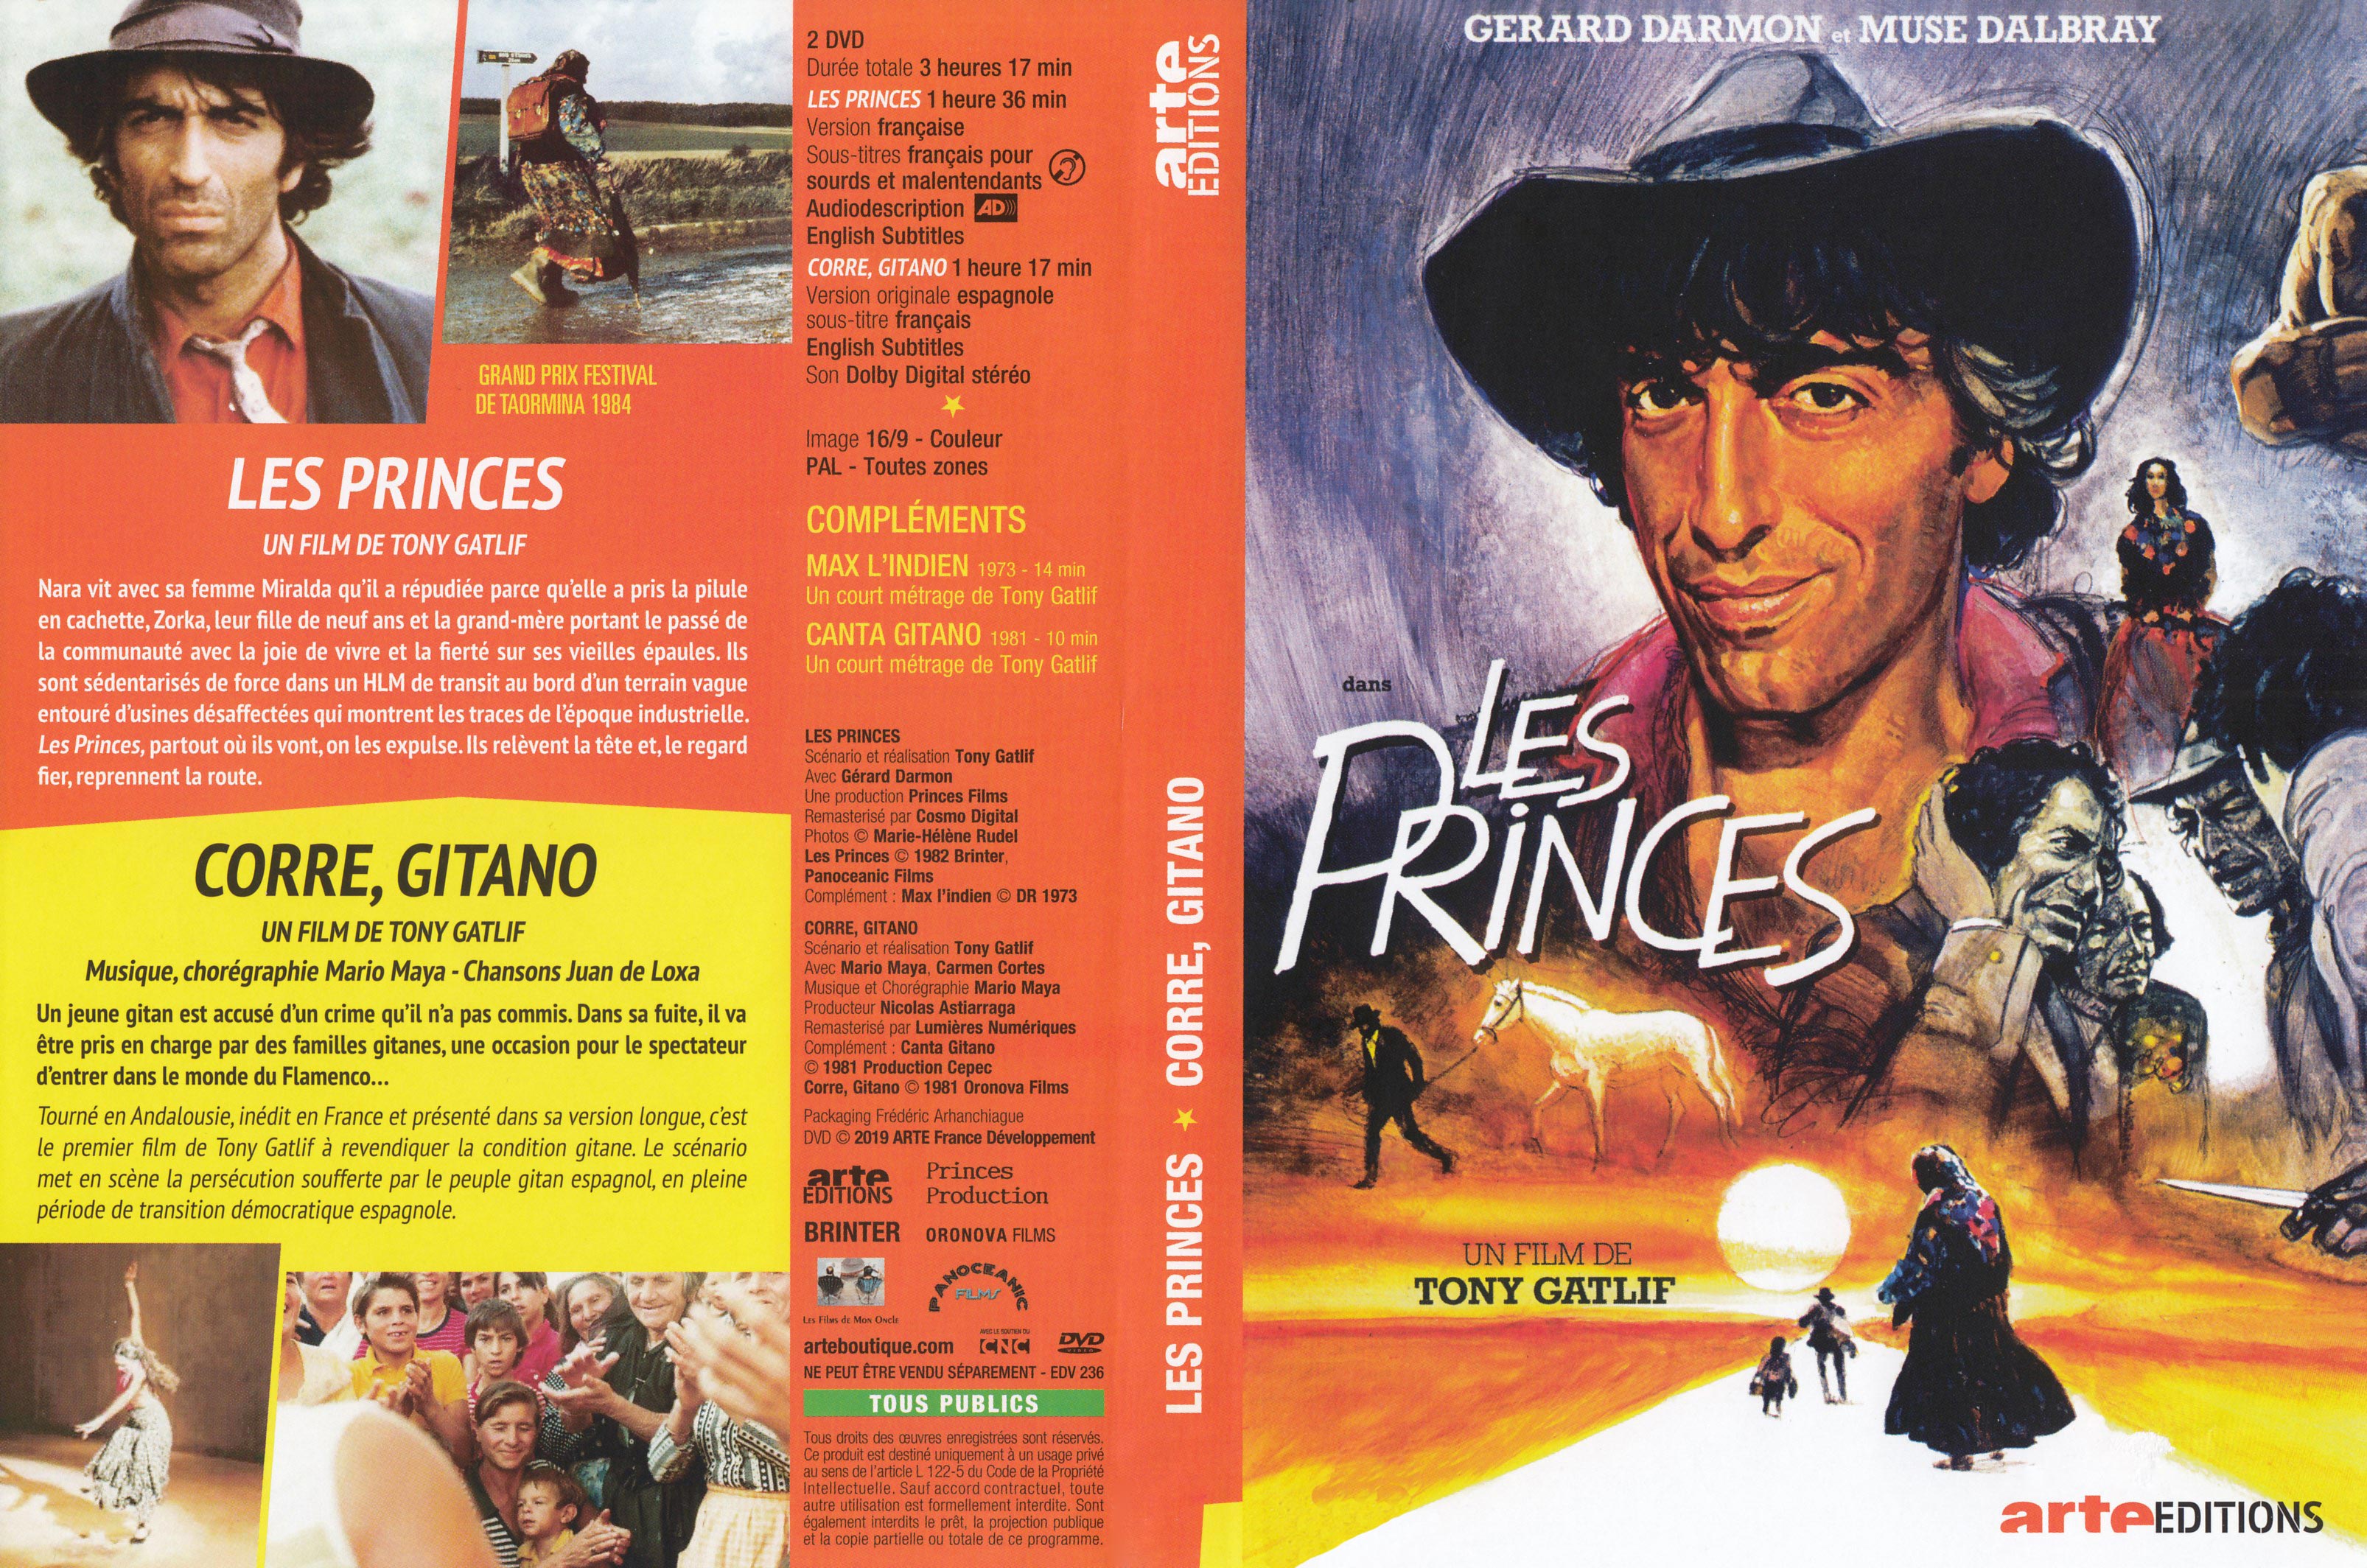 Jaquette DVD Les princes + Corre, gitano